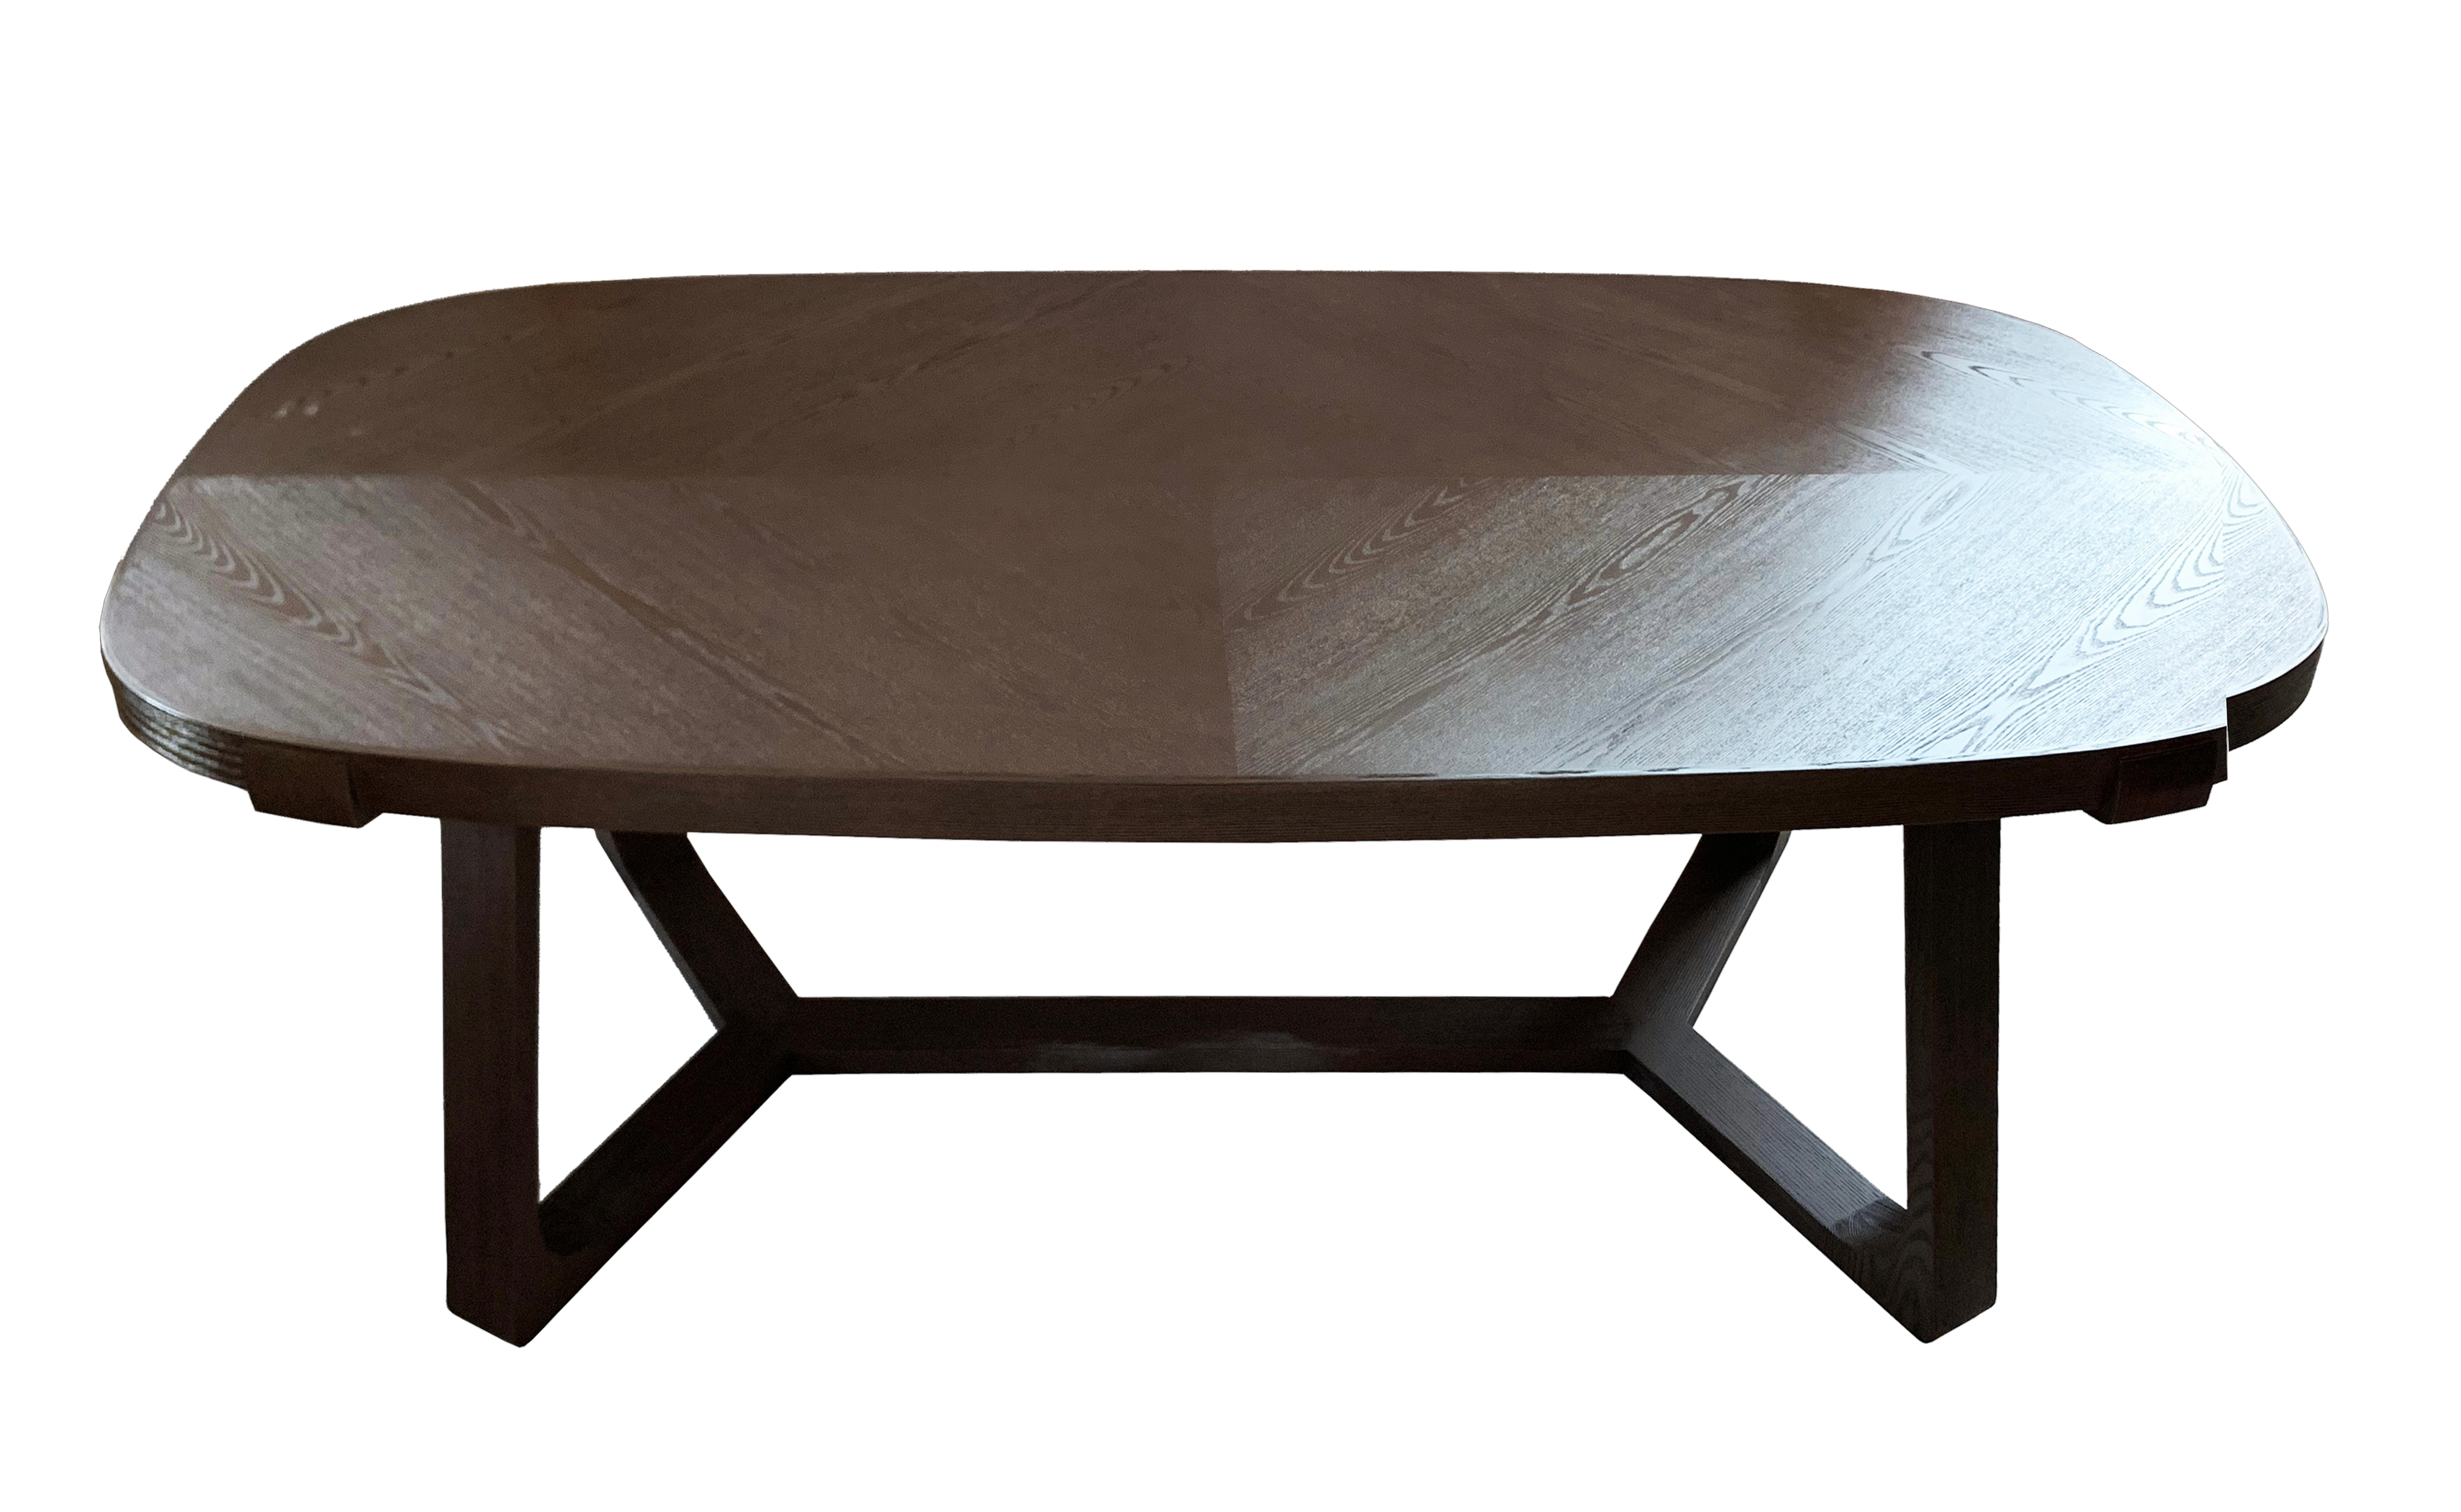 notre table de salle à manger intemporelle est conçue pour offrir une interprétation moderne du mobilier traditionnel en bois imbriqué. fabriquée en chêne massif avec un plateau ovale, la table est ornée de détails complexes et de profils très